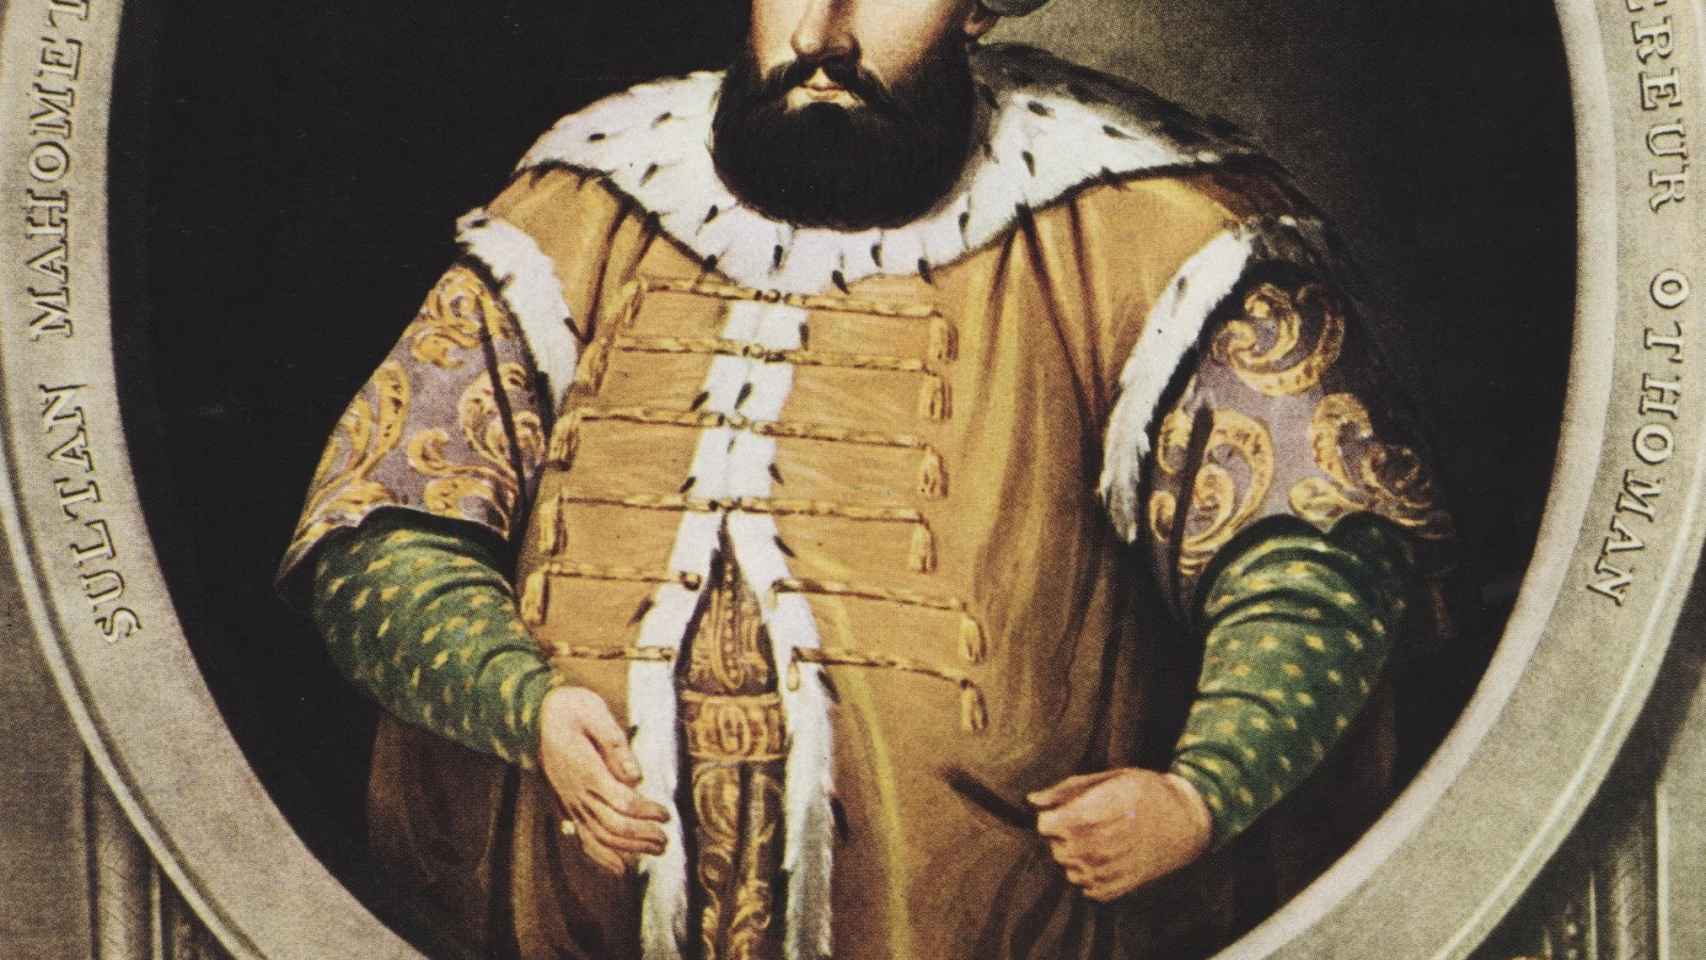 Mehmed III.